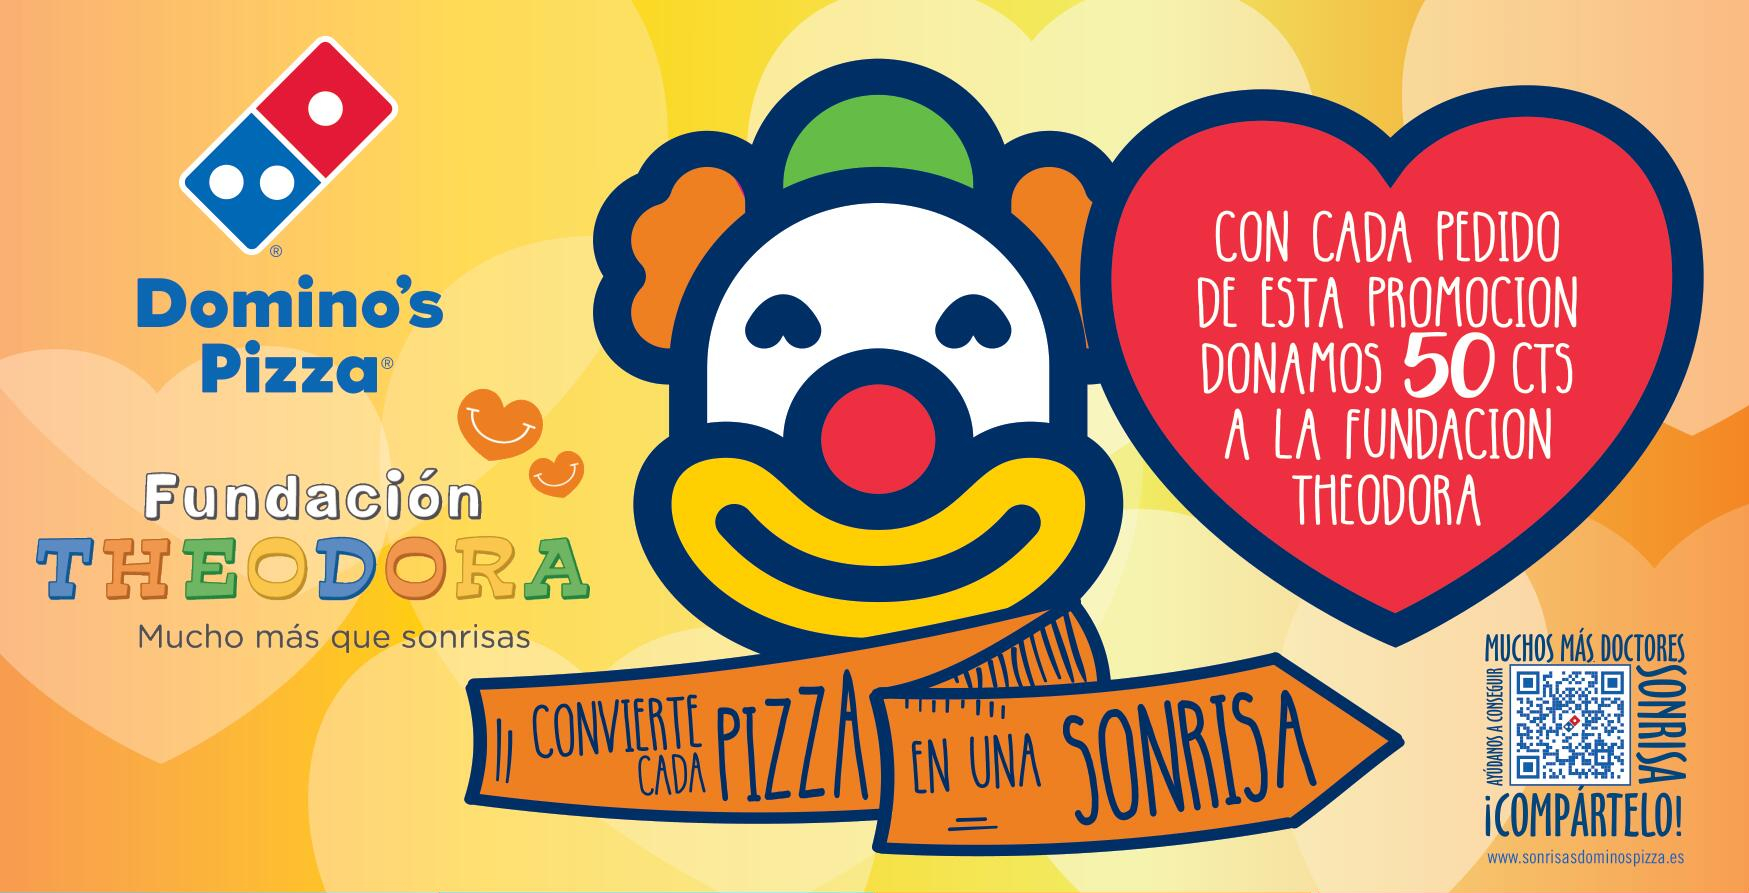 Códigos de descuento para Domino's Pizza en colaboración con la fundación Theodora